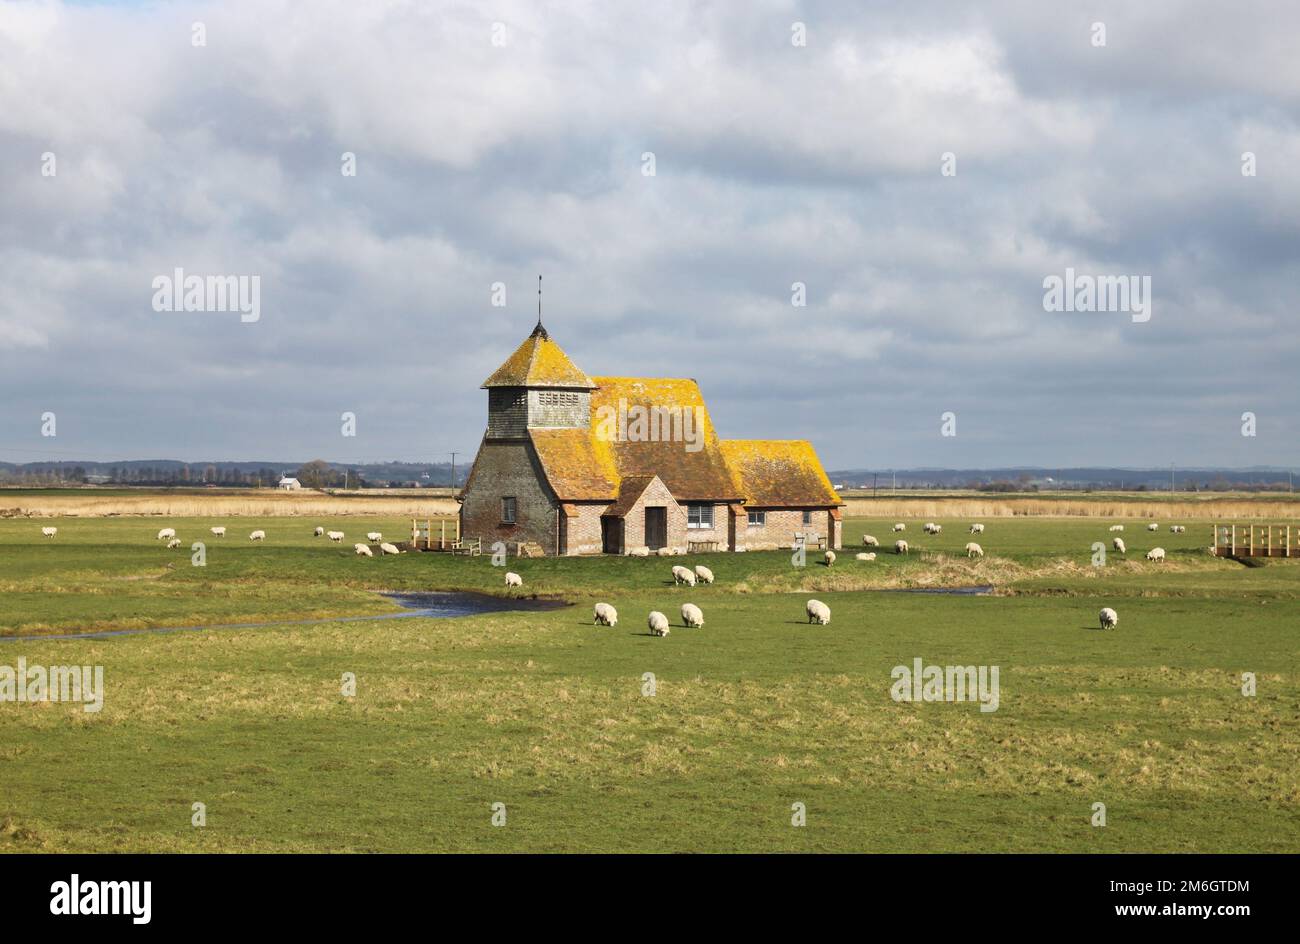 Fairfield Church on Romney Marsh, Kent, UK Stock Photo